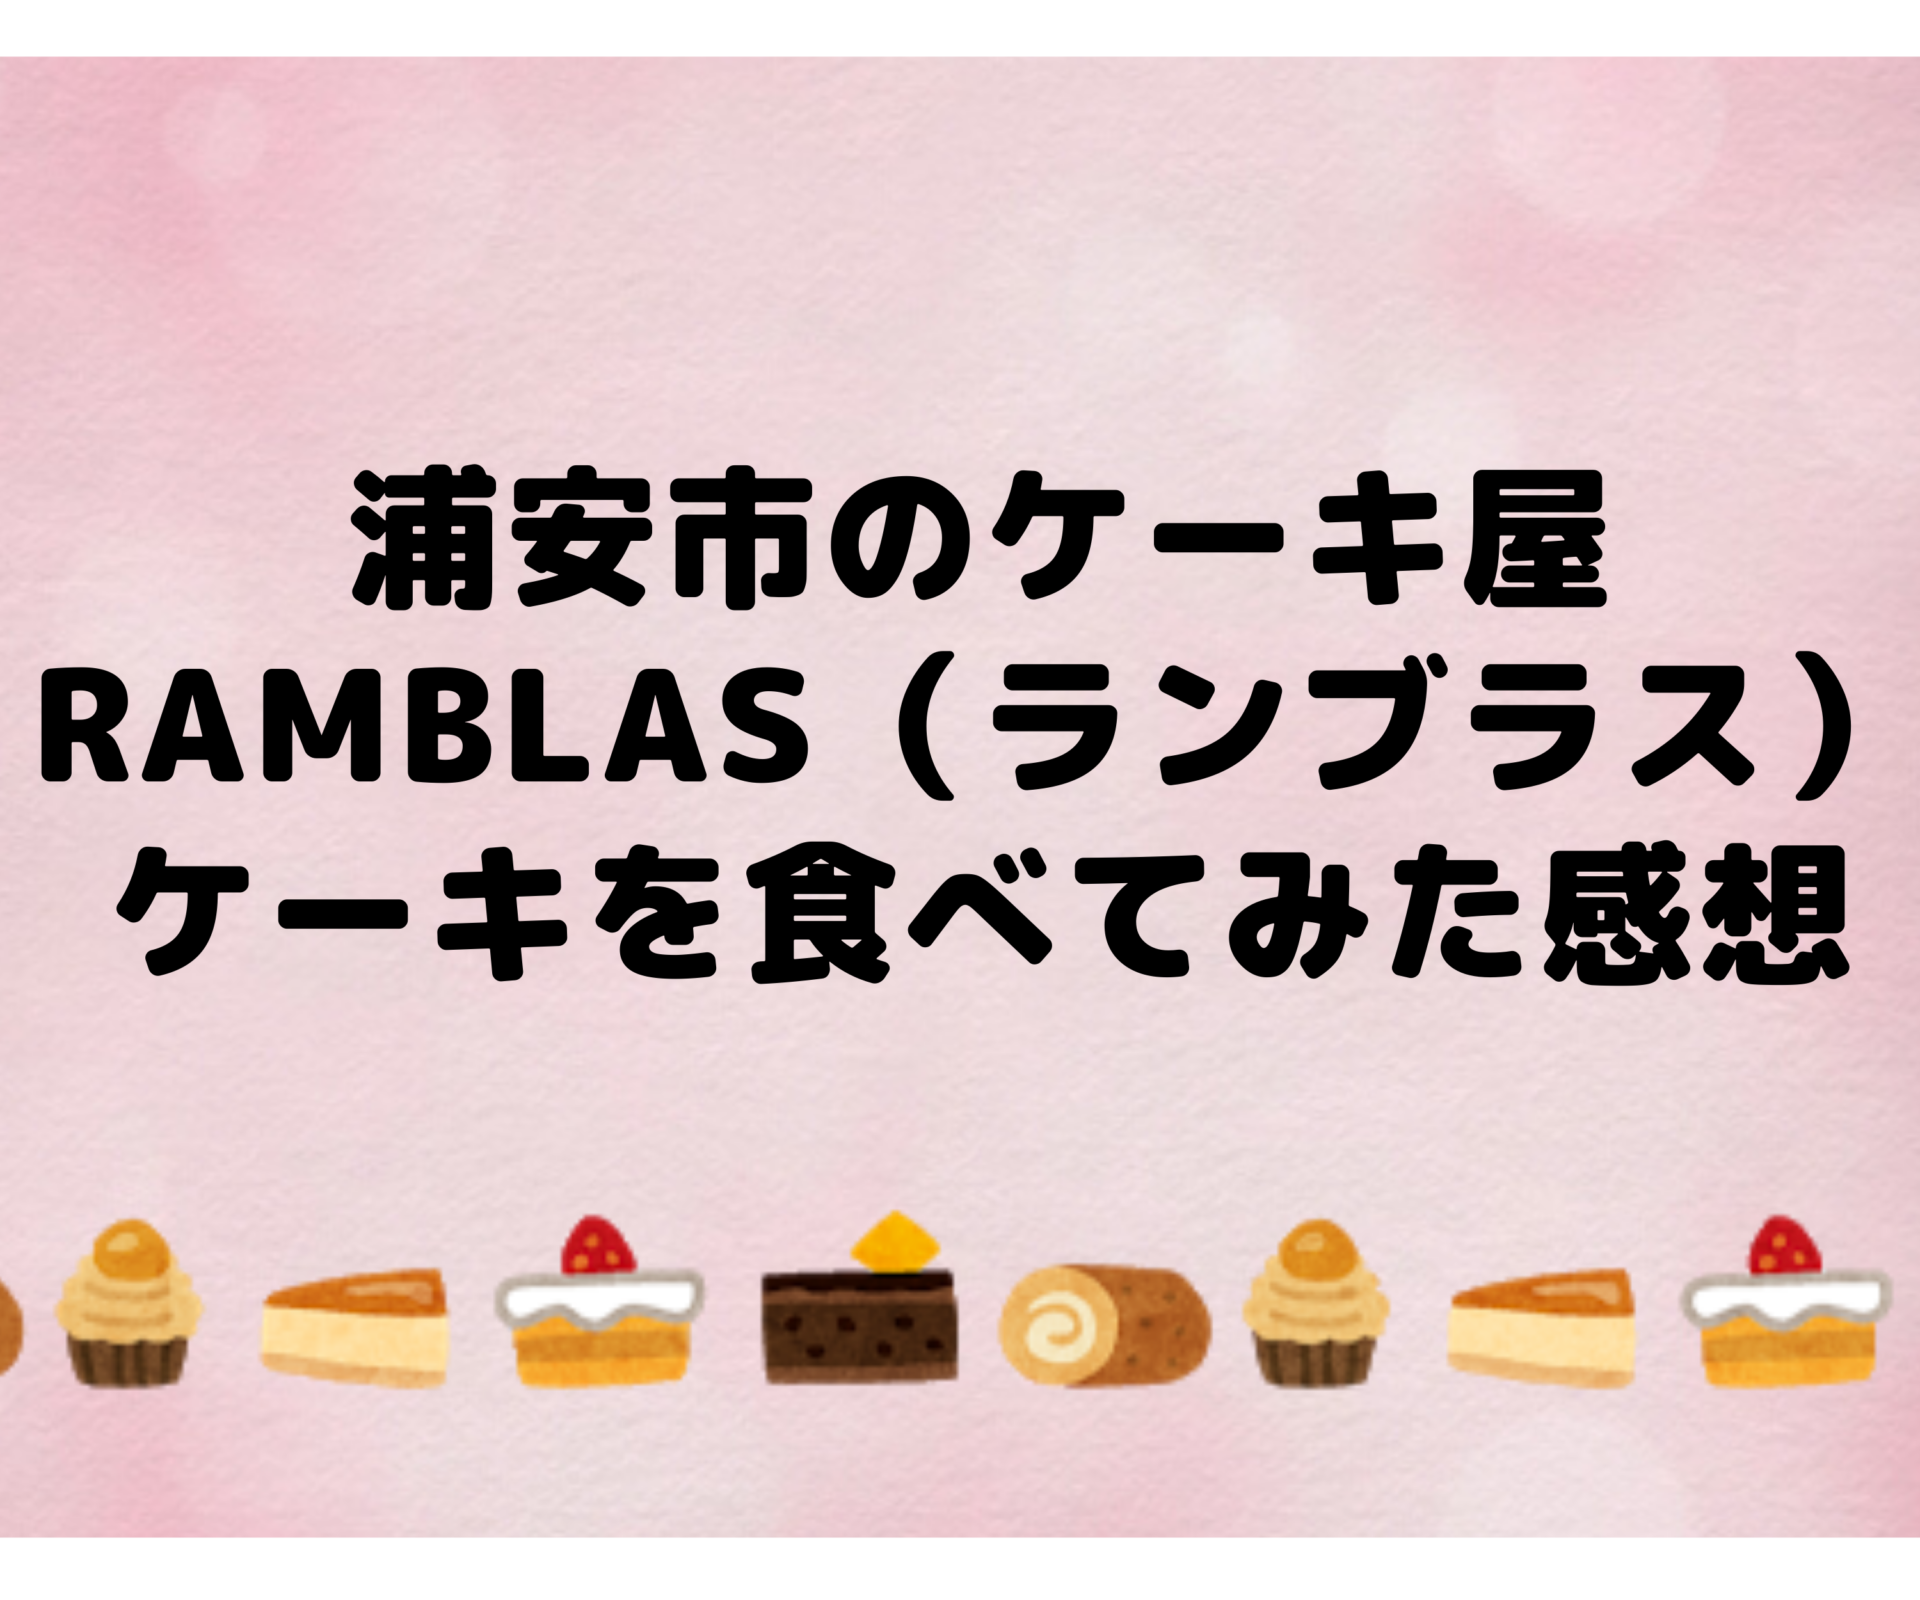 浦安市のケーキ屋ramblas ランブラス はクオリティ高めでコスパ良し ケーキを食べてみた感想 いちかばちか晴れブログ